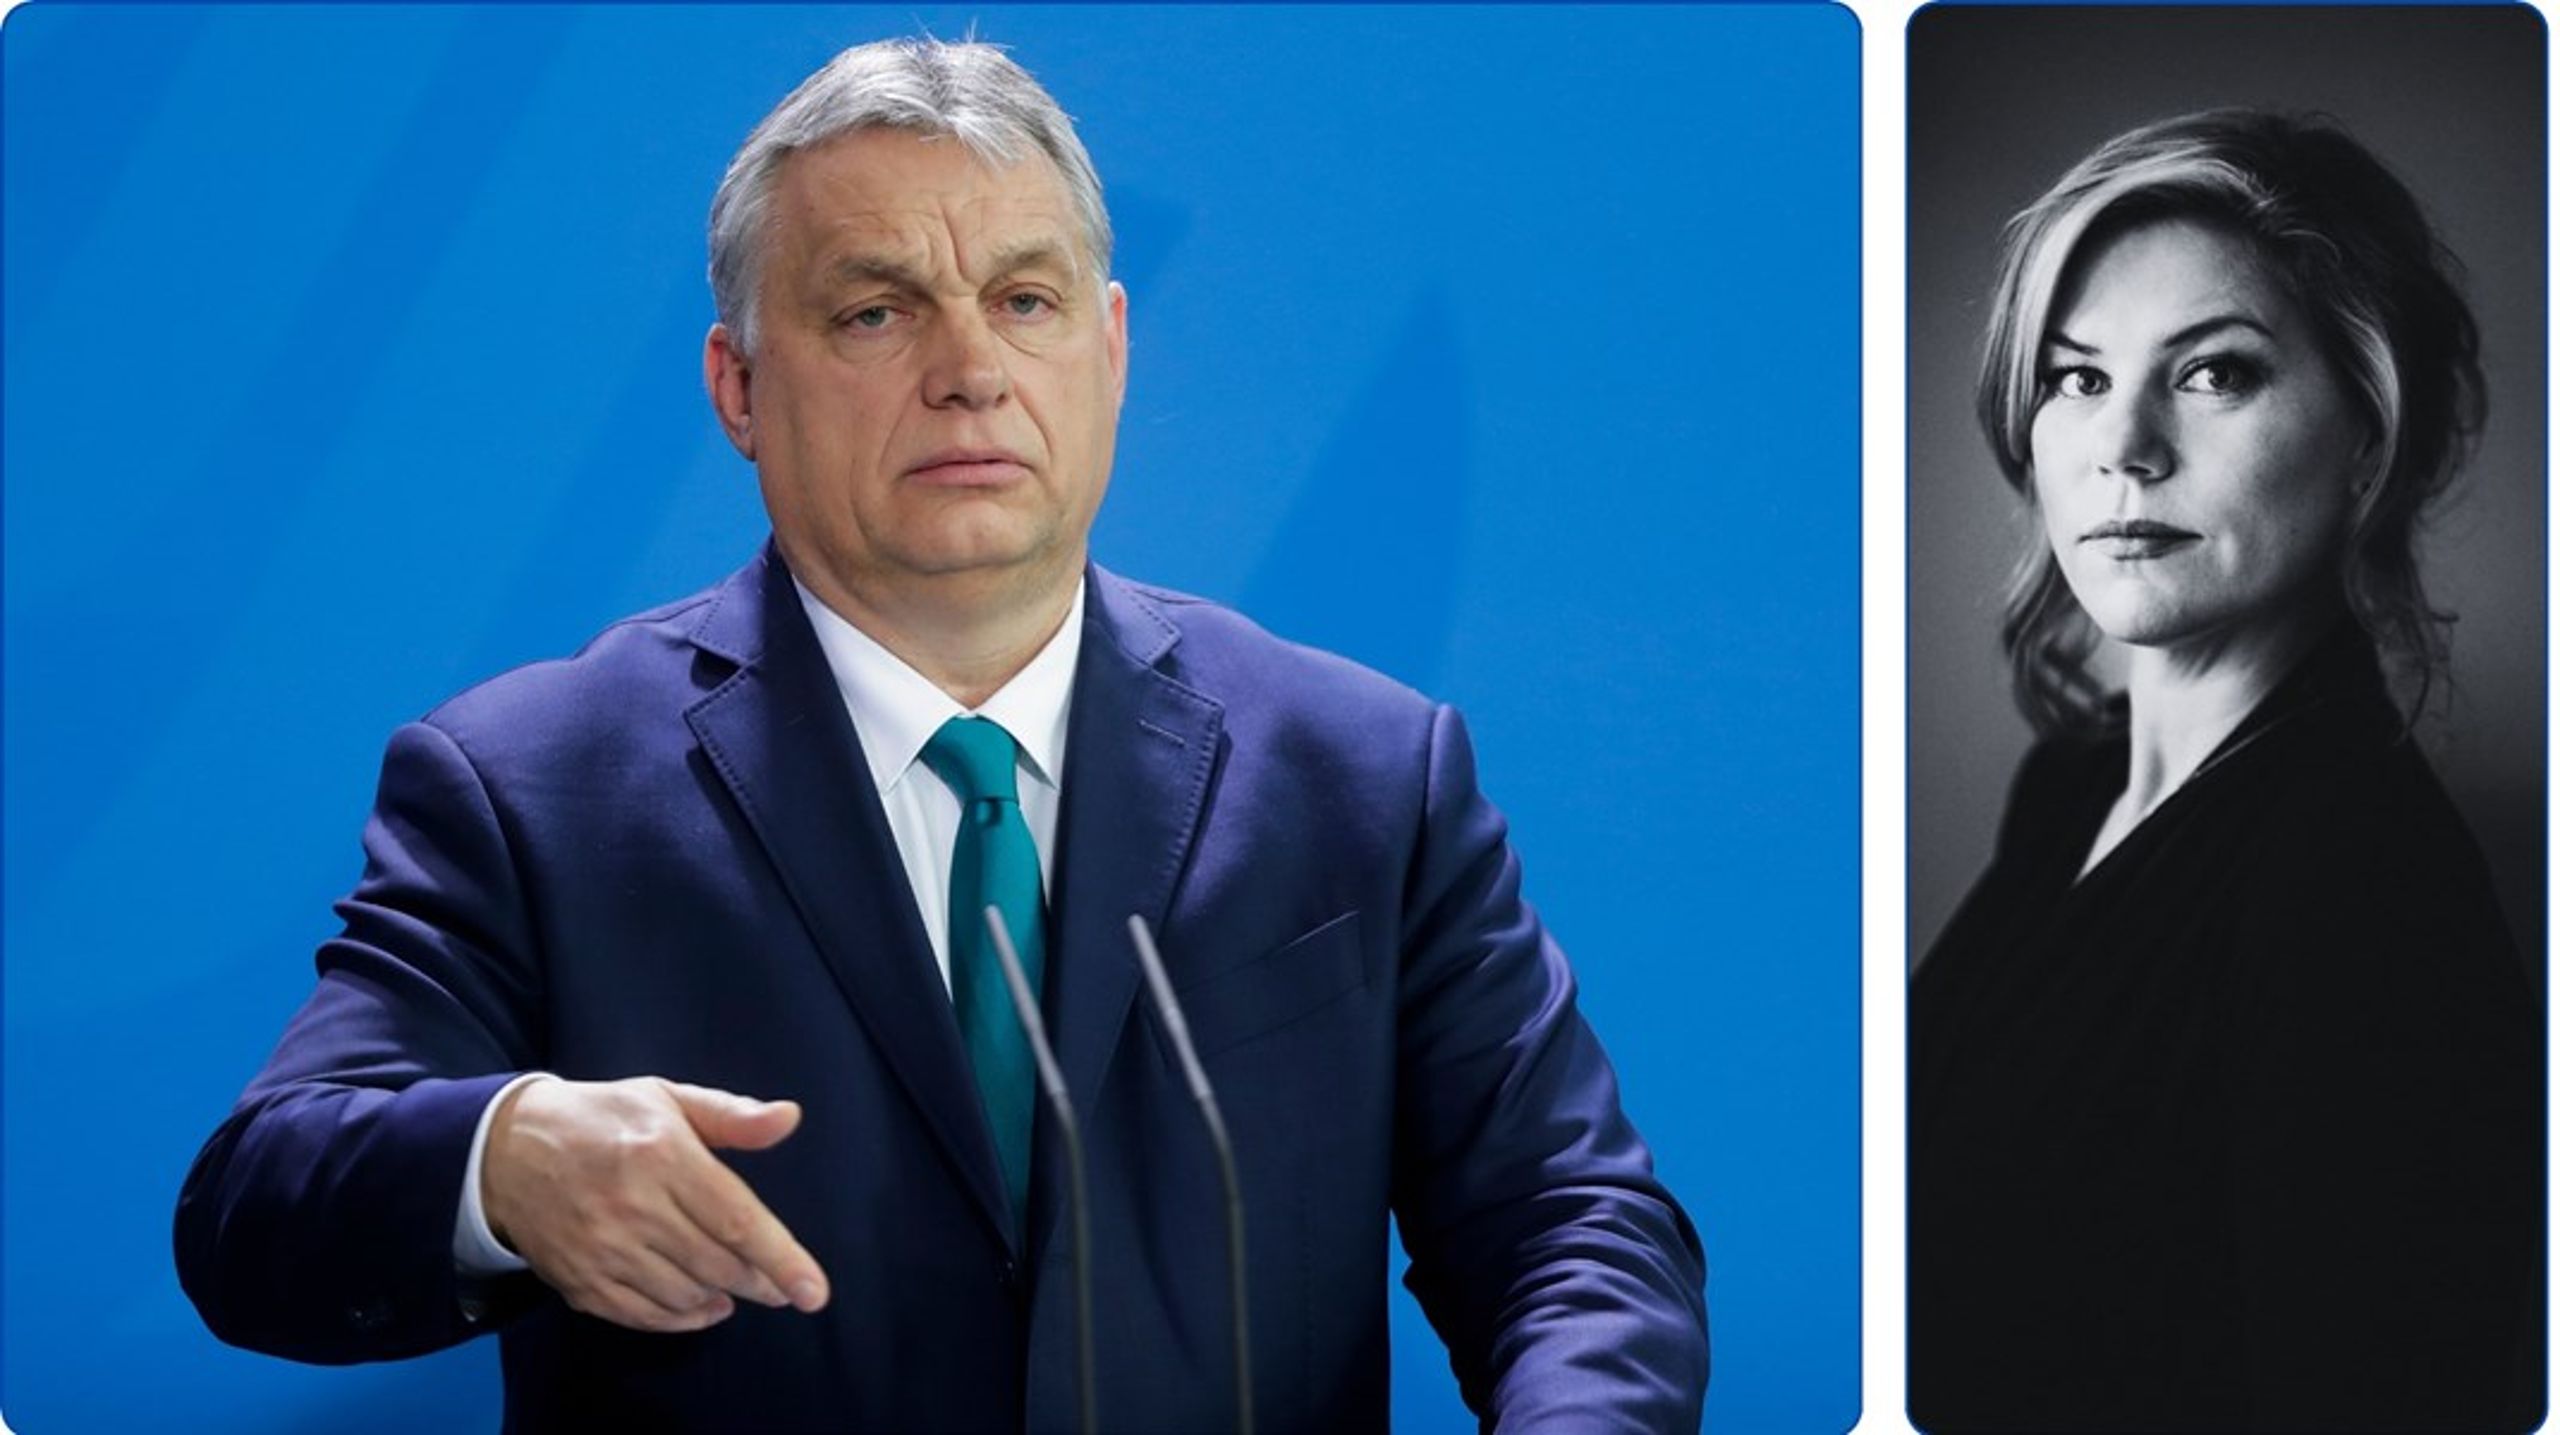 På torsdag kan EU bestemme seg hvem det er som skal befinne seg under froskens bakdel: Europas sikkerhet eller Victor Orbán, skriver Altingets EU-analytiker Jette Christensen.